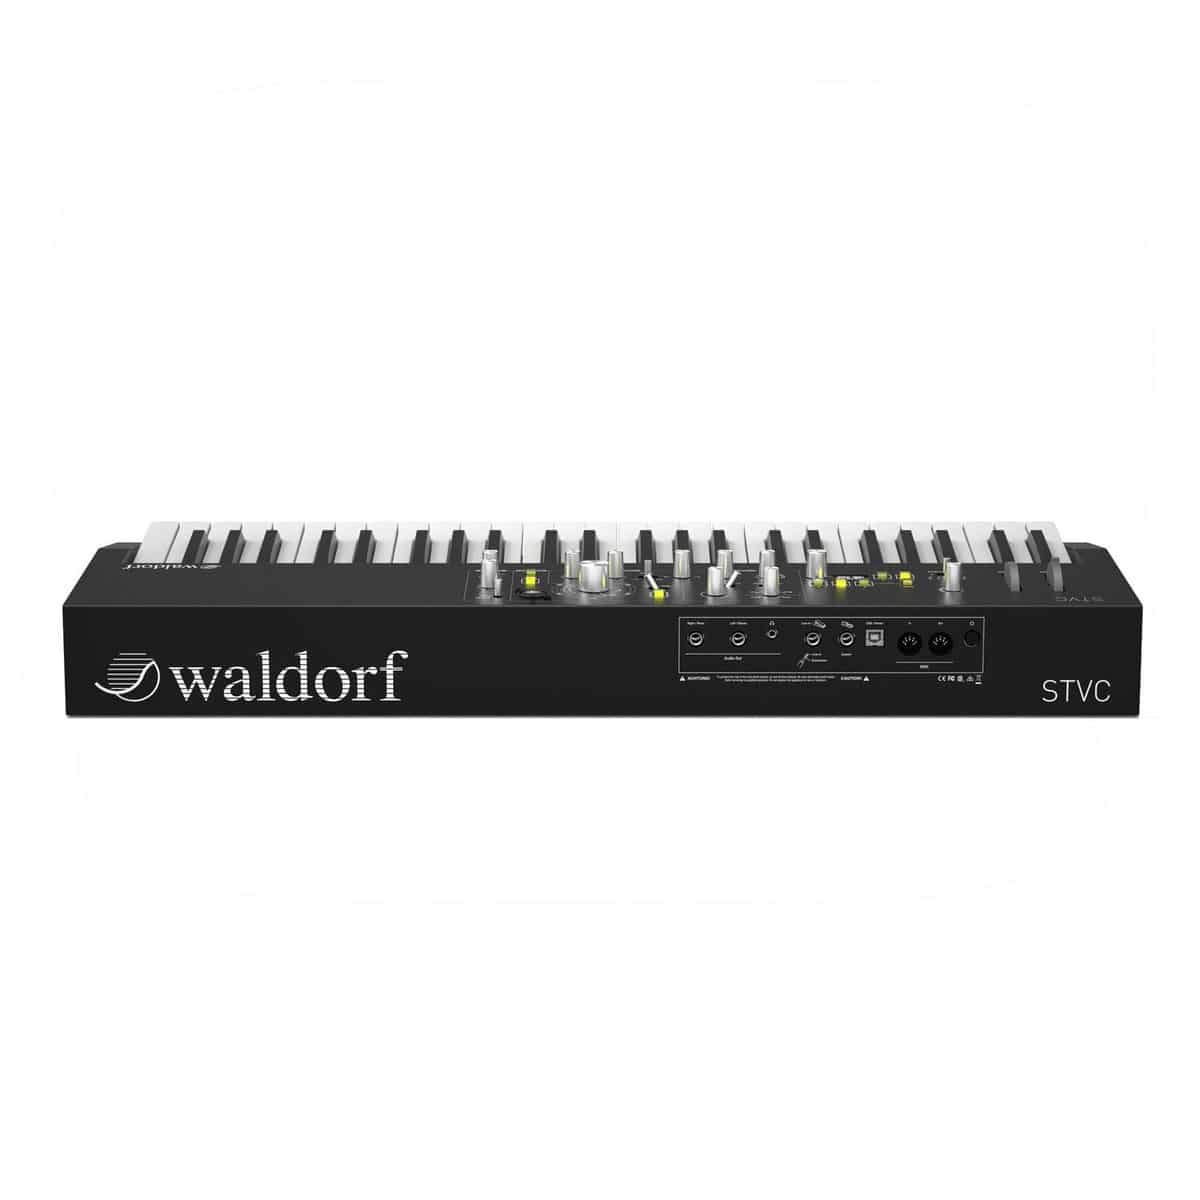   Waldorf STVC Keyboard